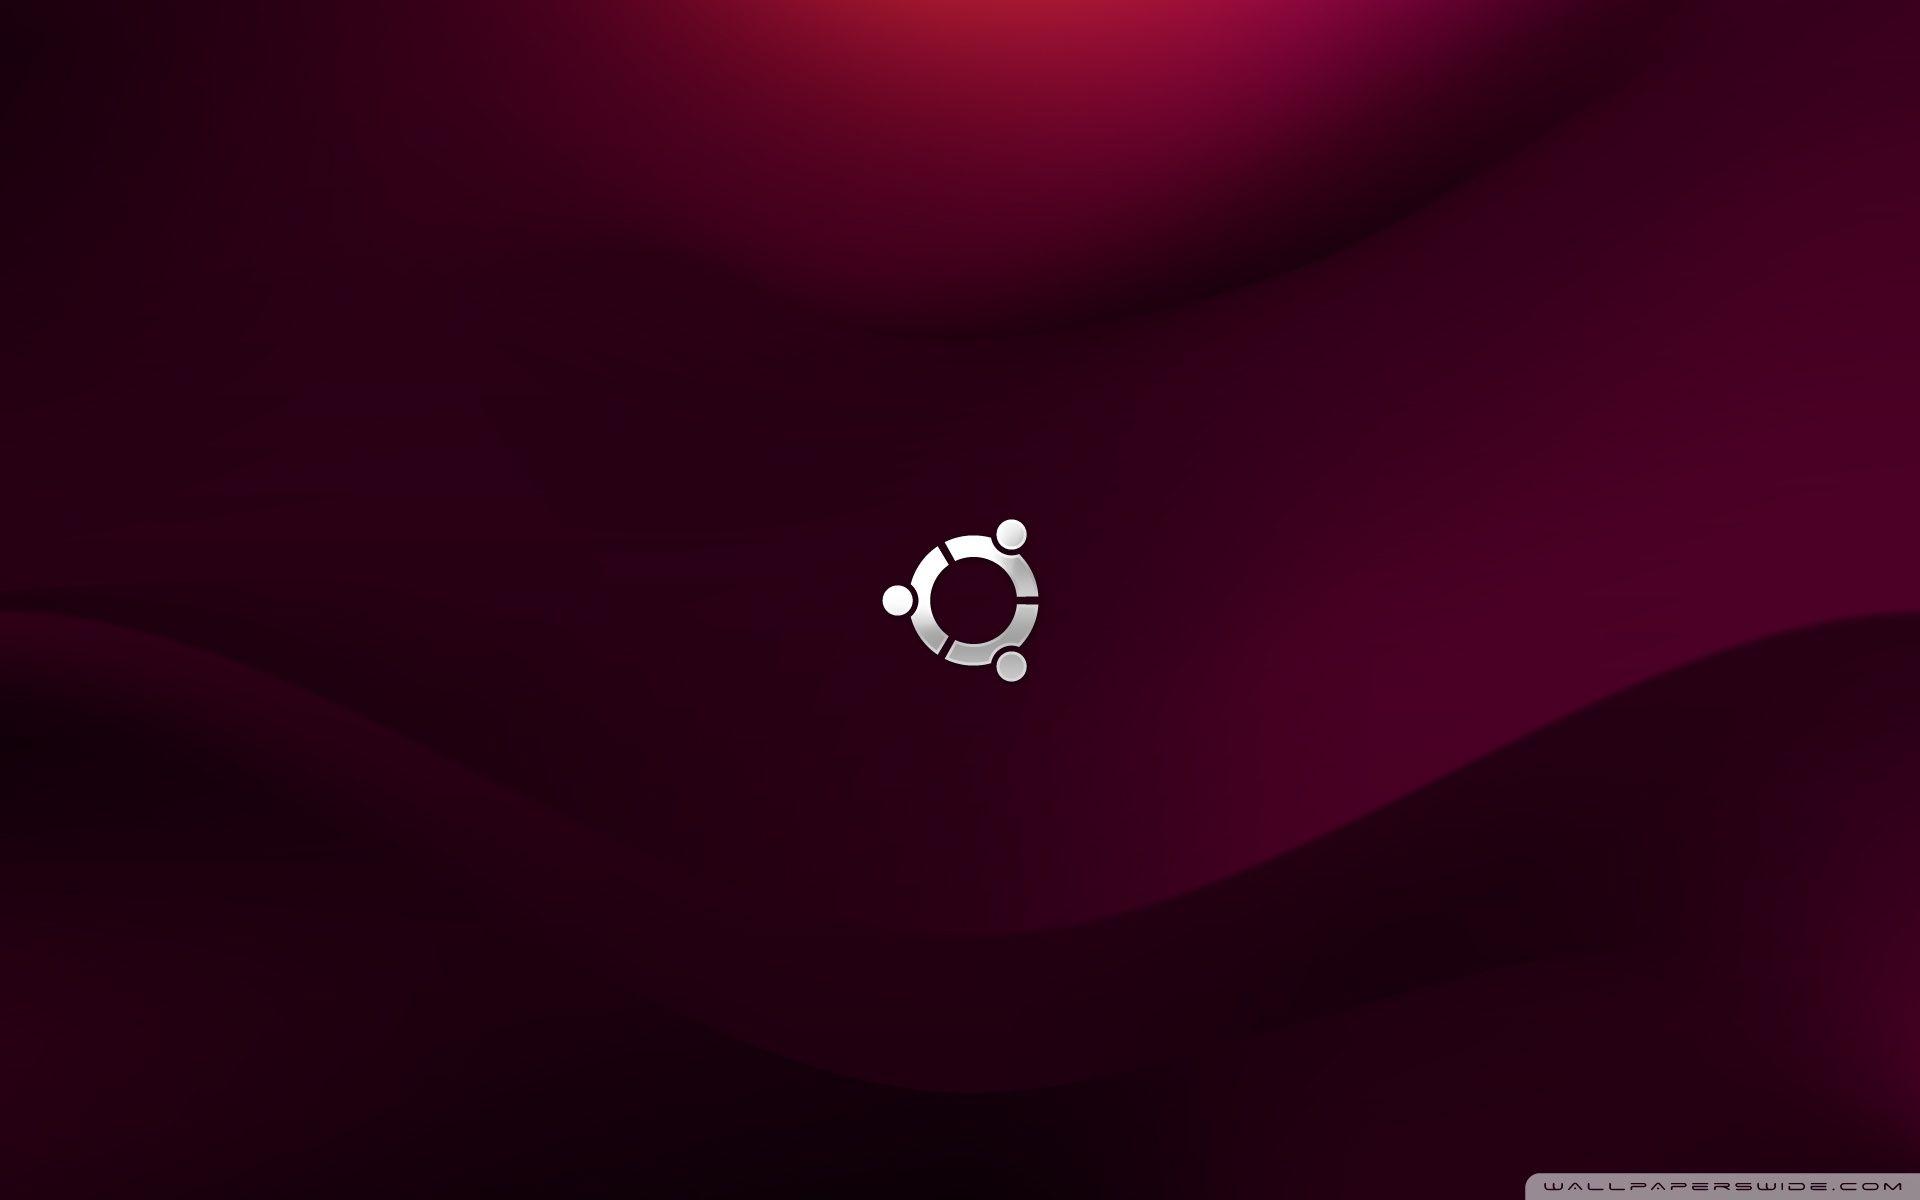 Bạn đang tìm kiếm một hình nền Ubuntu 4K miễn phí? Đừng tìm đâu xa, truy cập ngay vào bộ sưu tập hình nền Ubuntu của chúng tôi. Bạn sẽ tìm thấy những bức ảnh 4k đặc sắc và miễn phí chỉ trong vài giây.